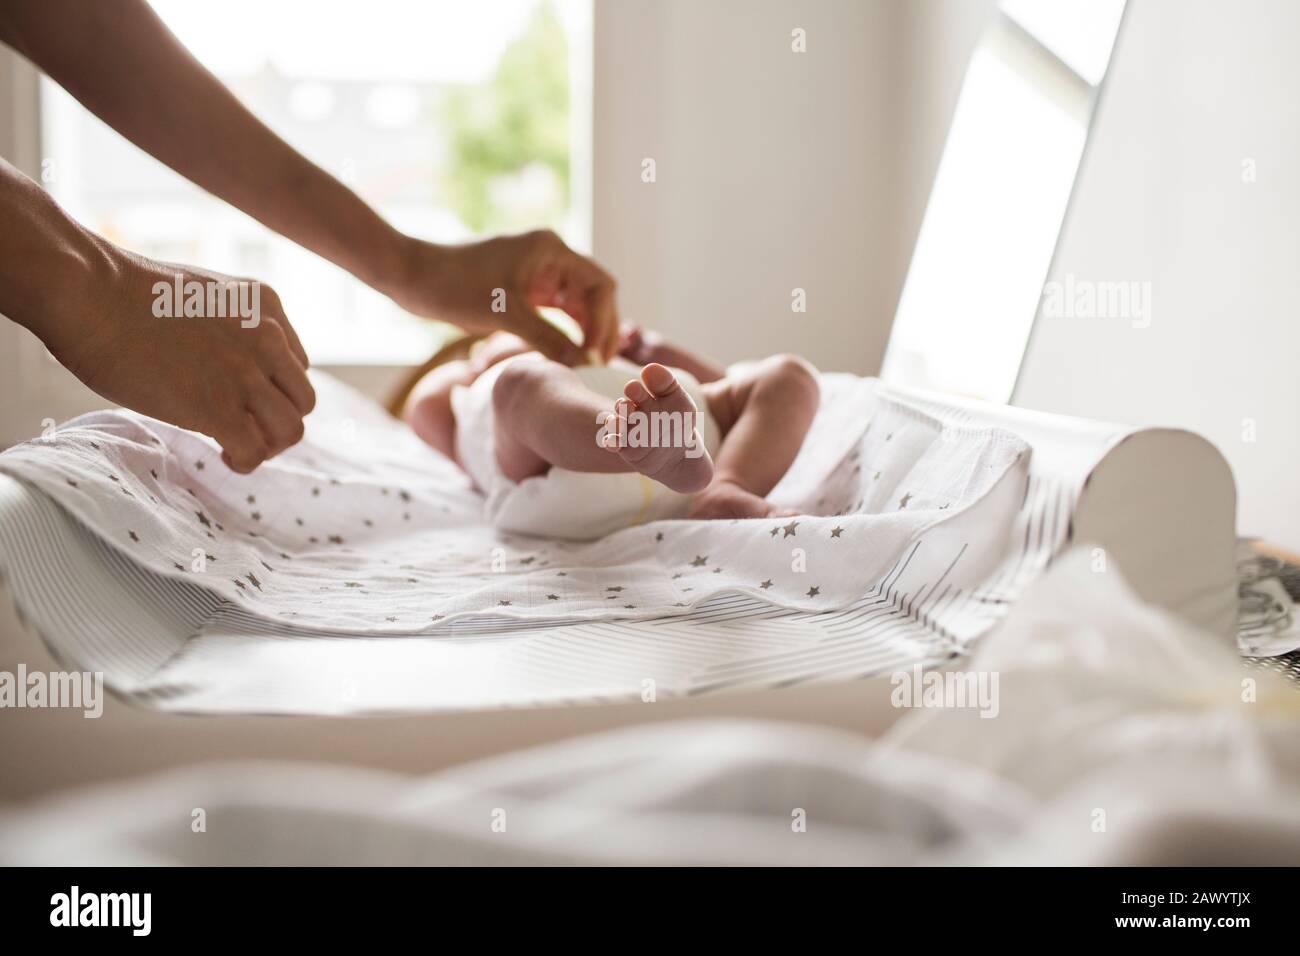 Madre cambiando el pañal del bebé recién nacido en la mesa cambiante Foto de stock